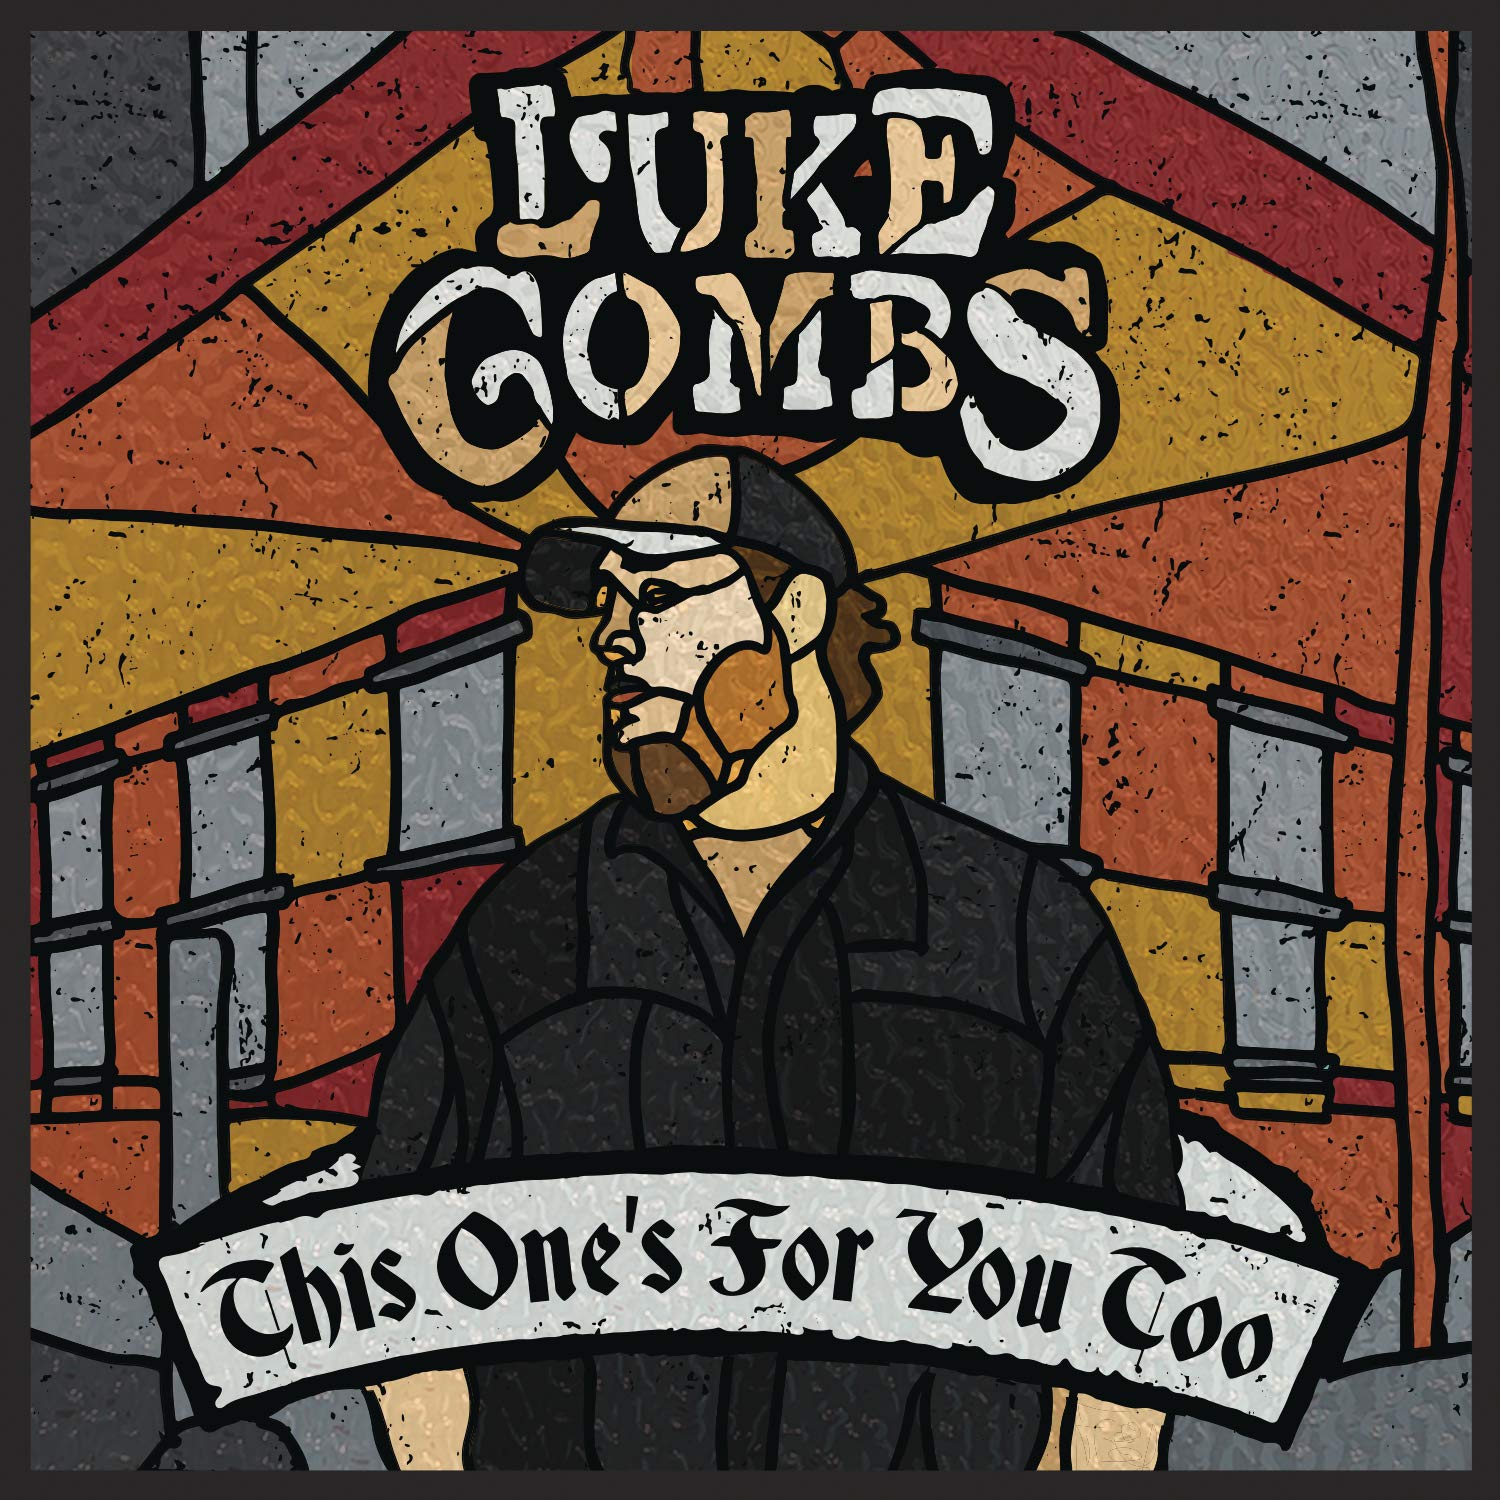 Luke Combs - Celui-ci aussi pour vous - Nouveau vinyle